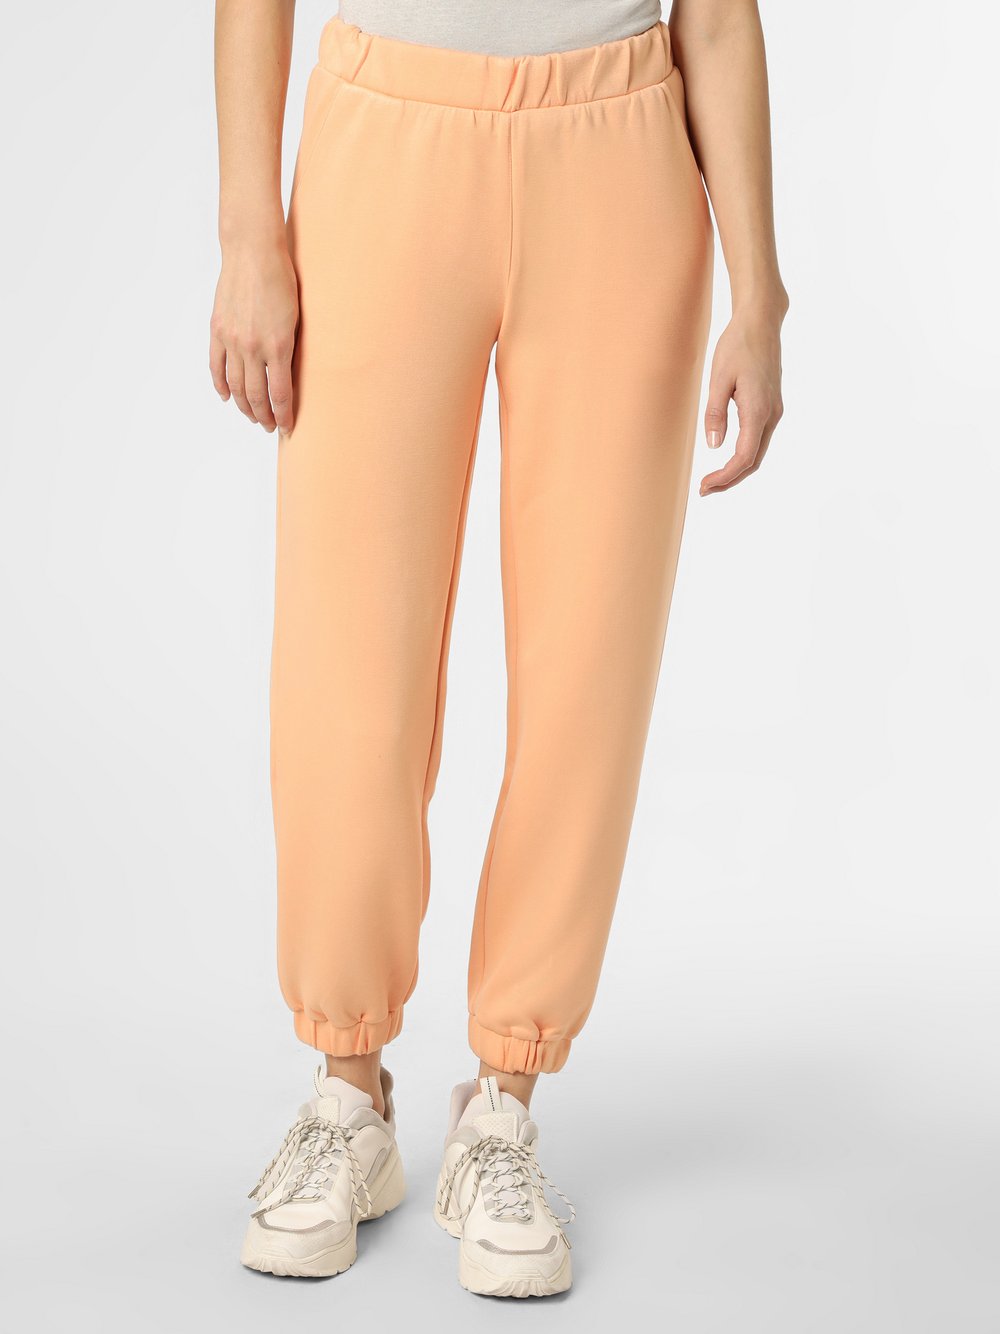 Moss Copenhagen - Damskie spodnie dresowe – Ima, pomarańczowy